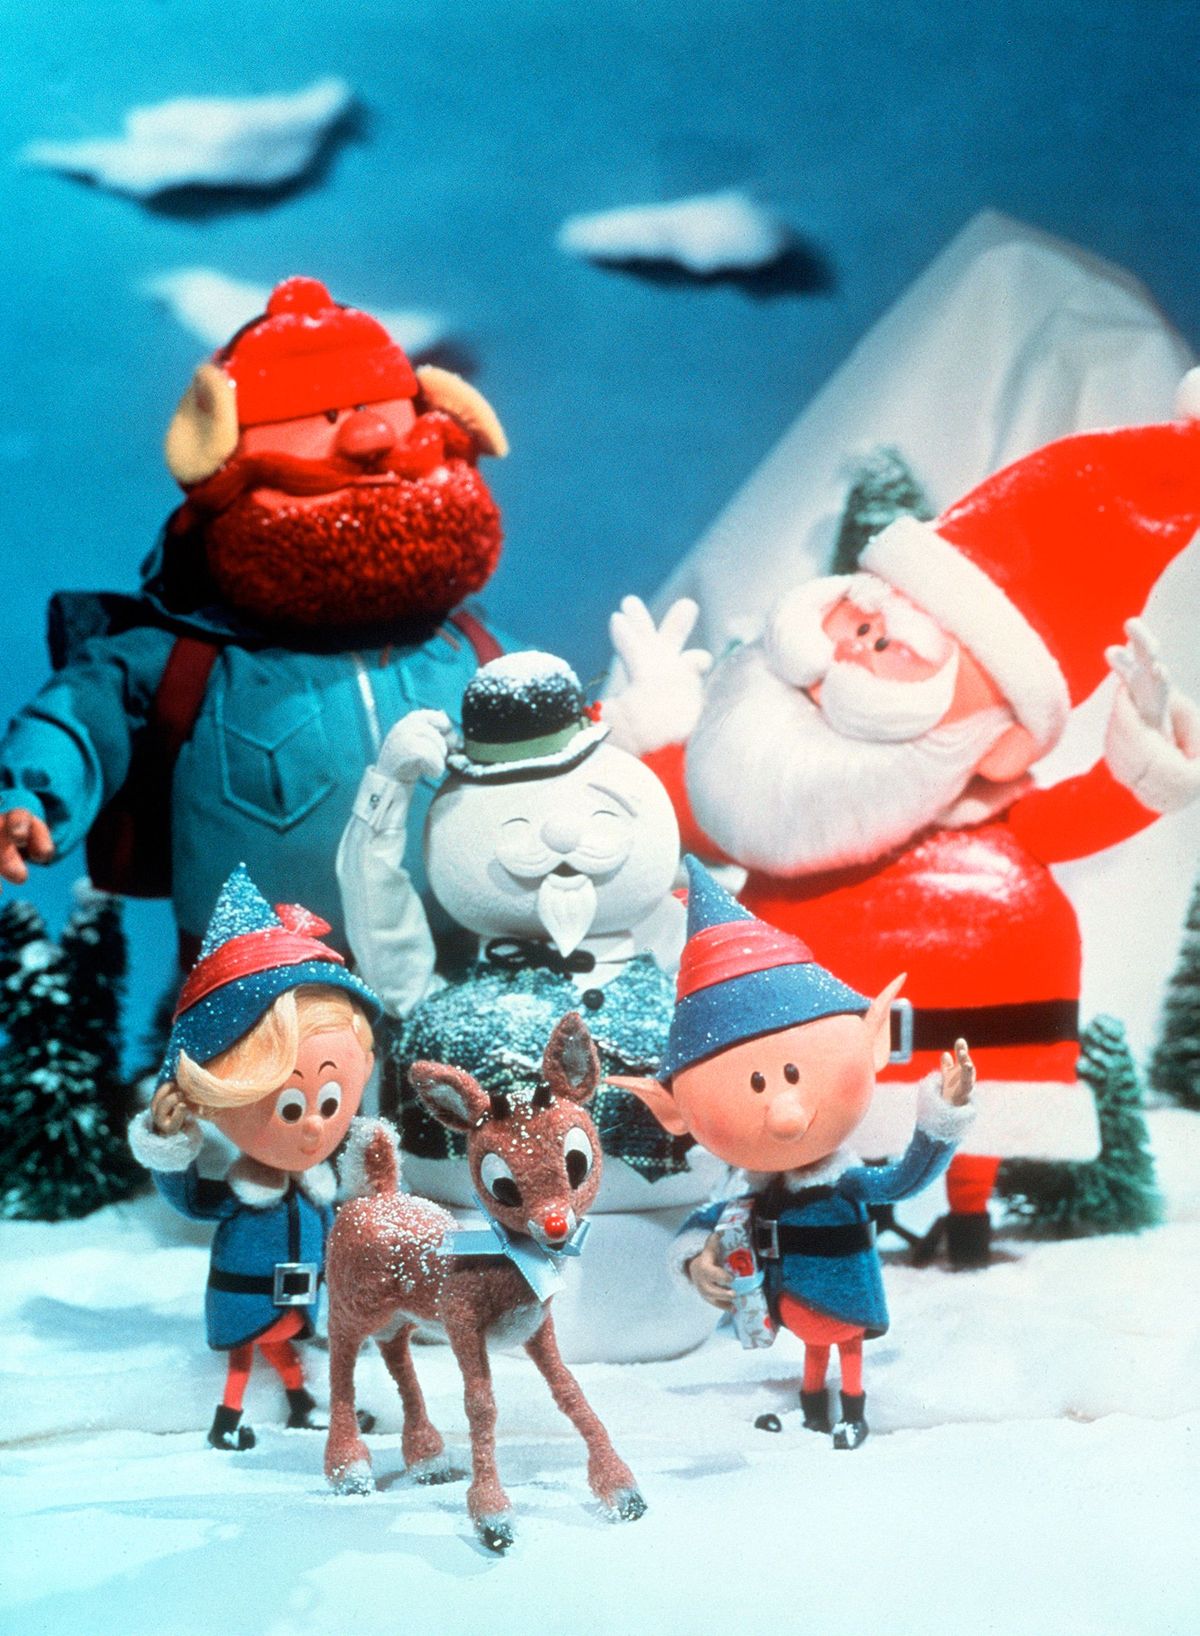 O greșeală a făcut din greșeală televiziunea lui Rudolph un domeniu public special?